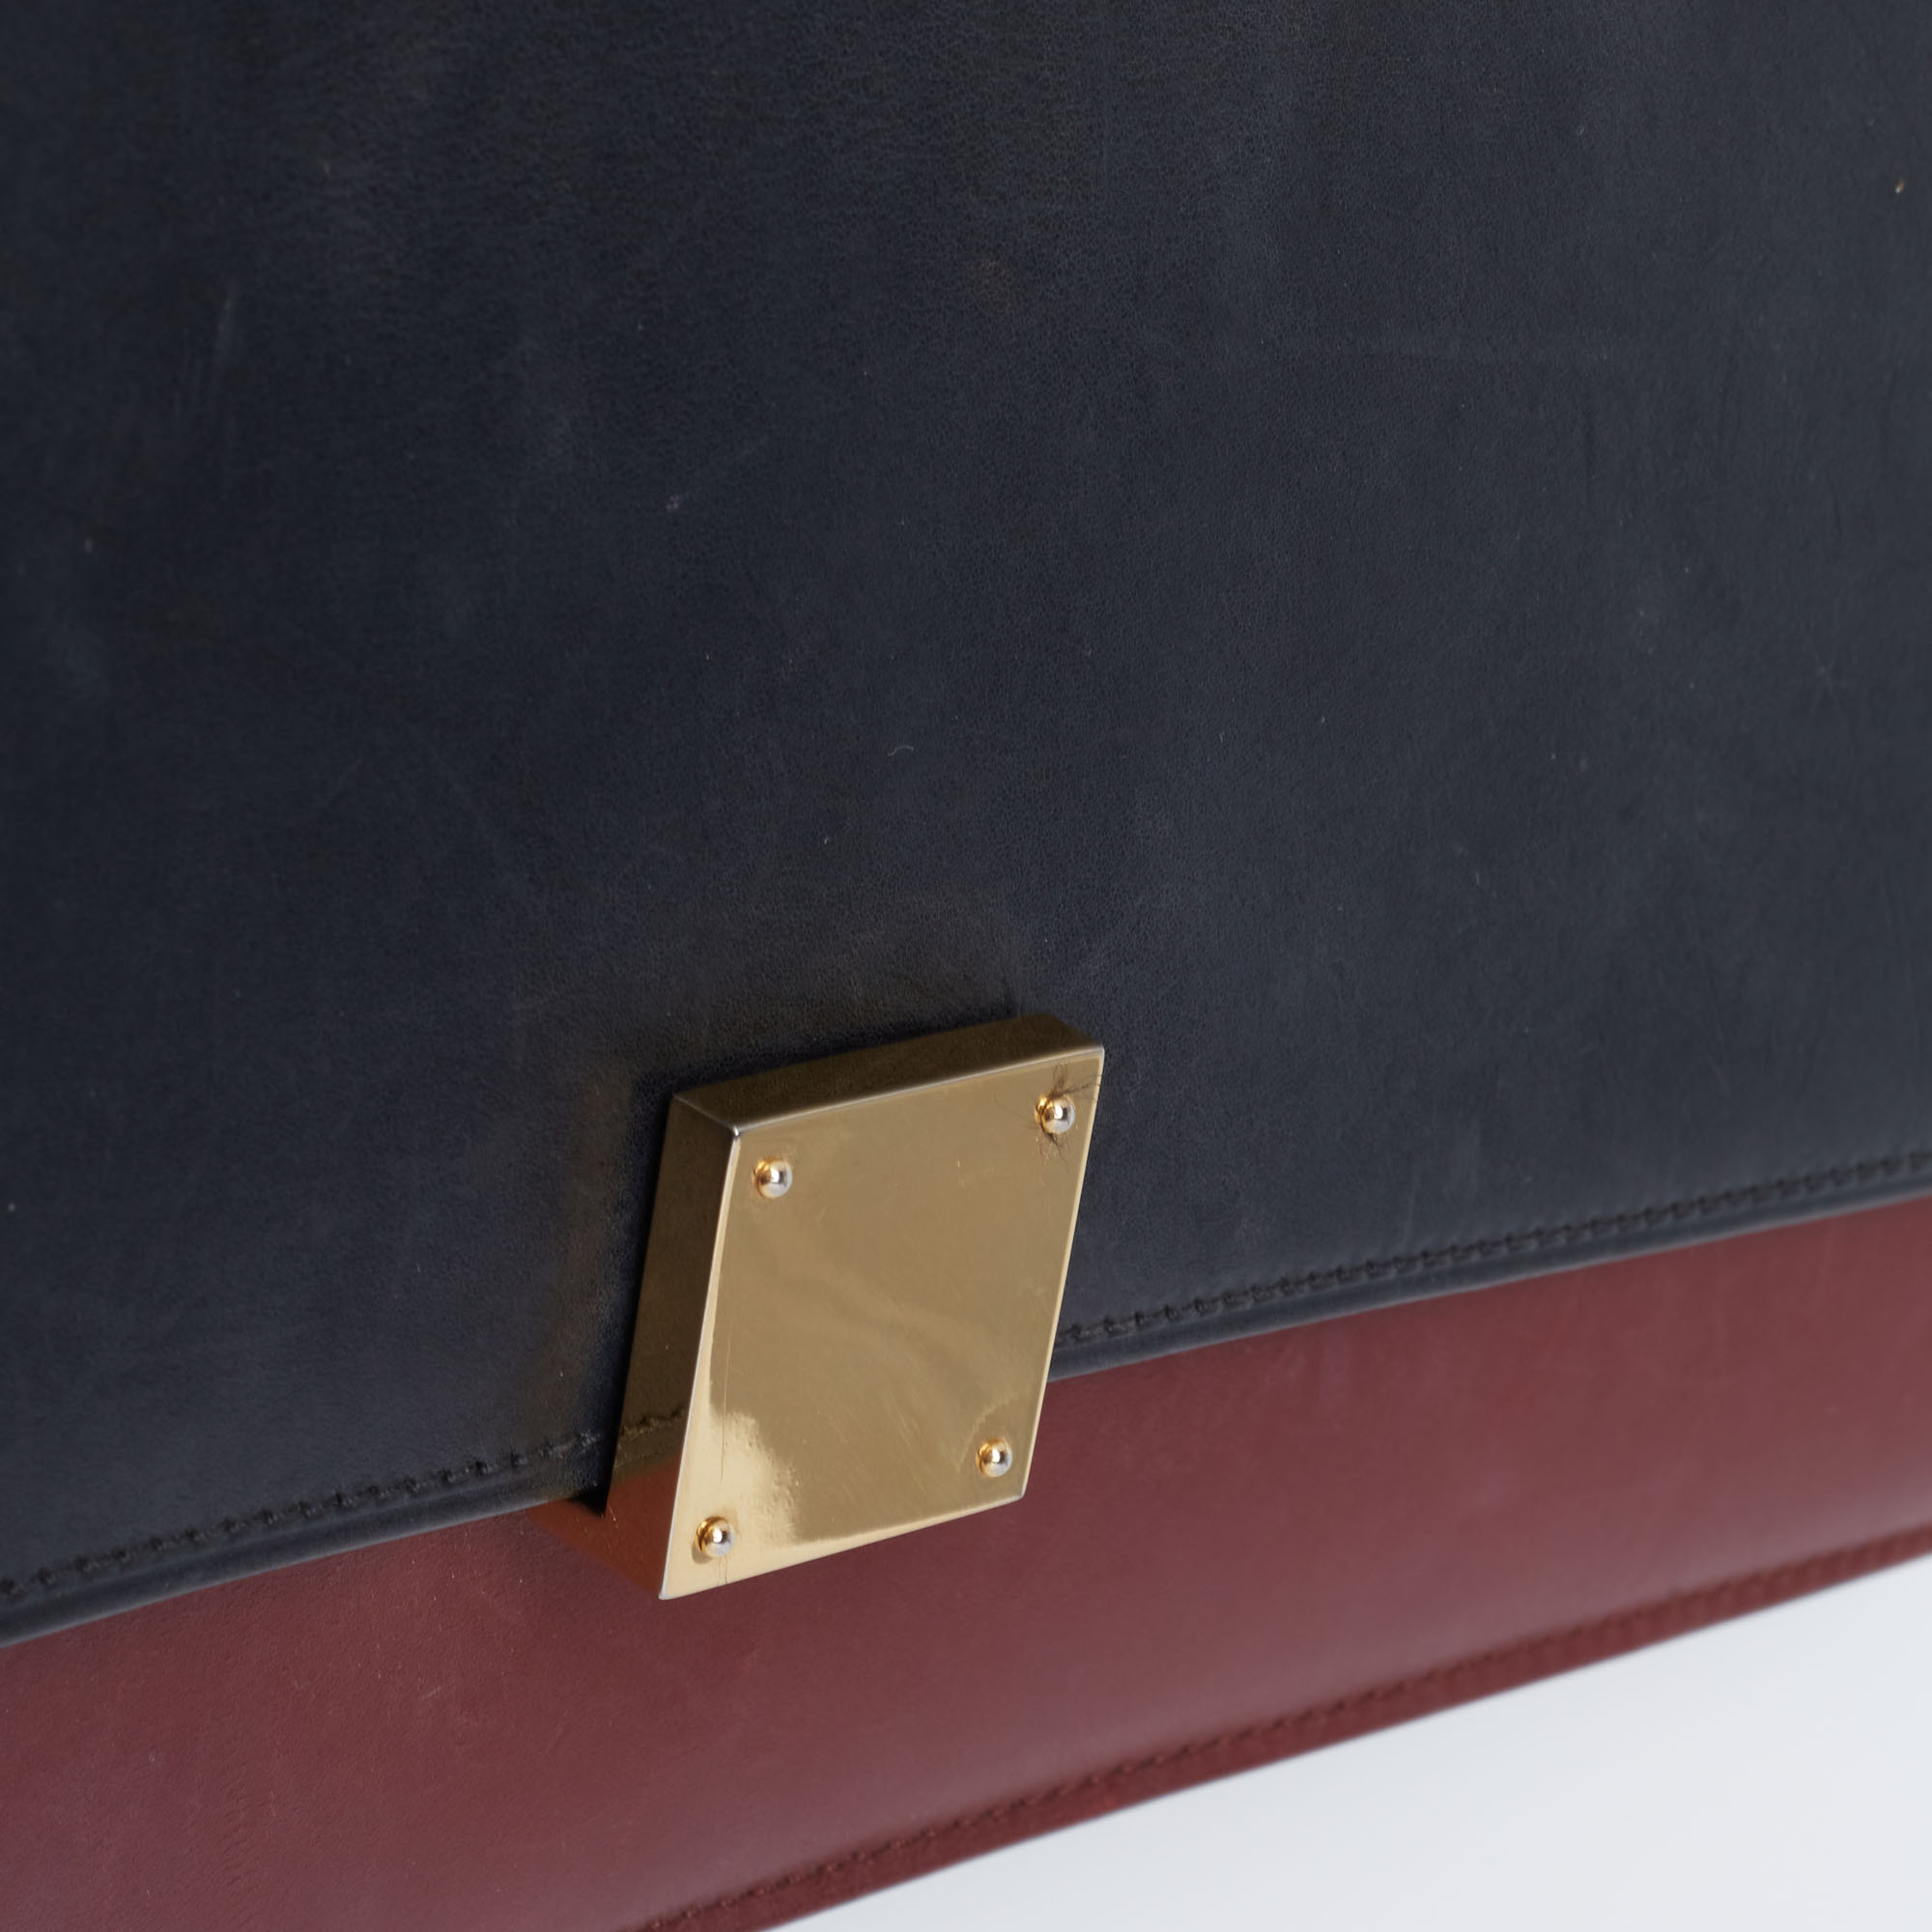 Celine Black/Red Leather Medium Case Bag